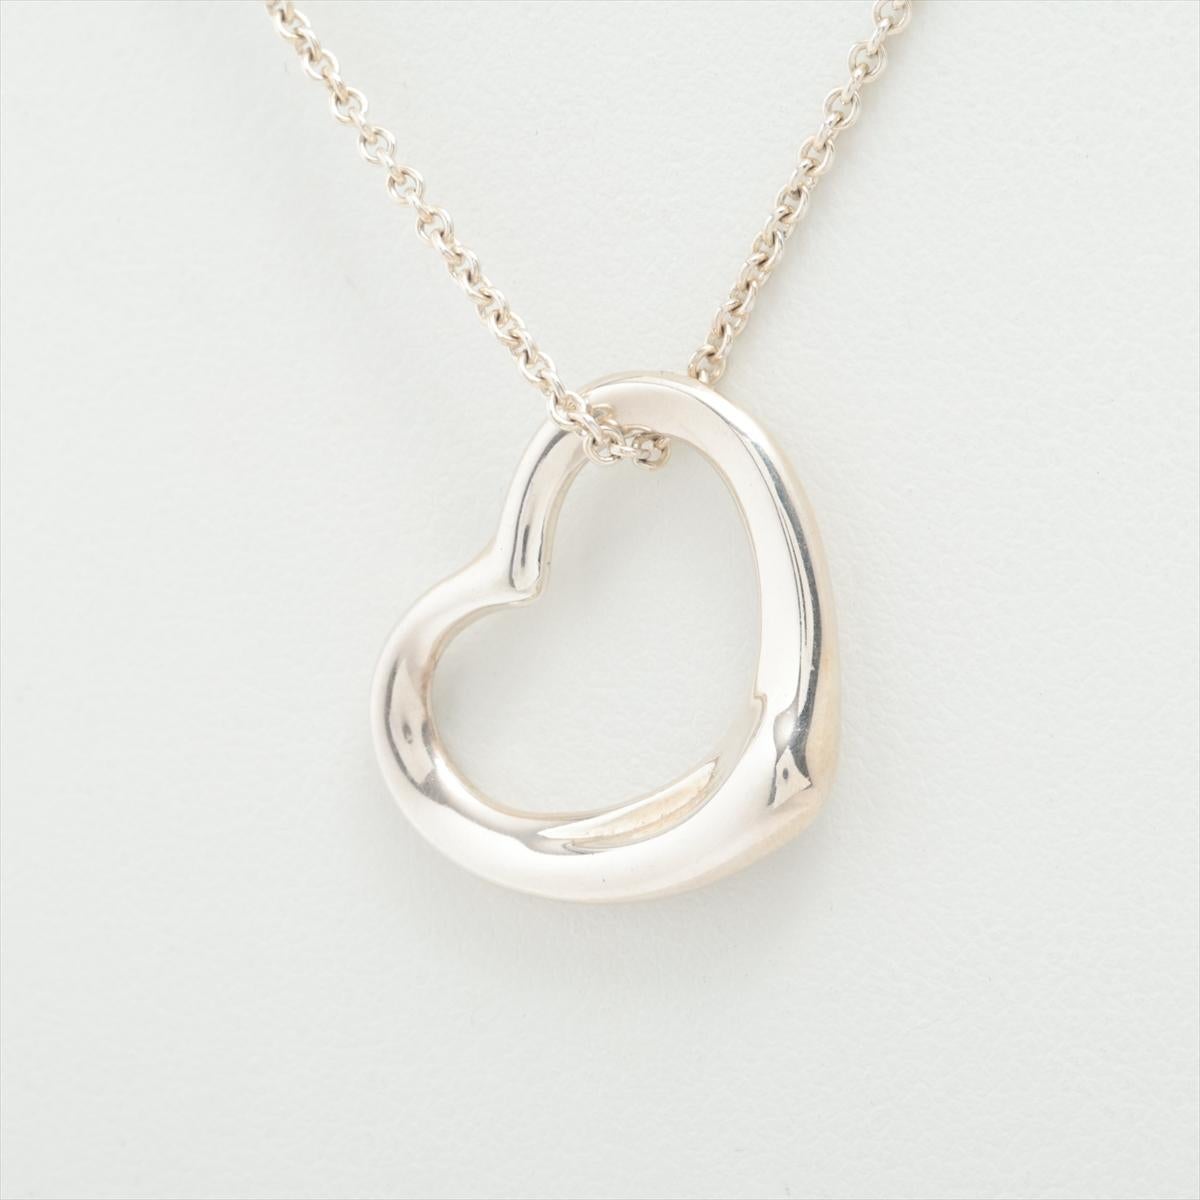 La collection Tiffany & Co. Le collier à cœur ouvert Elegetti en argent est un bijou intemporel et élégant qui respire la sophistication. Conçu par l'artiste de renom Elsa Peretti, le collier présente un délicat pendentif en forme de cœur ouvert,